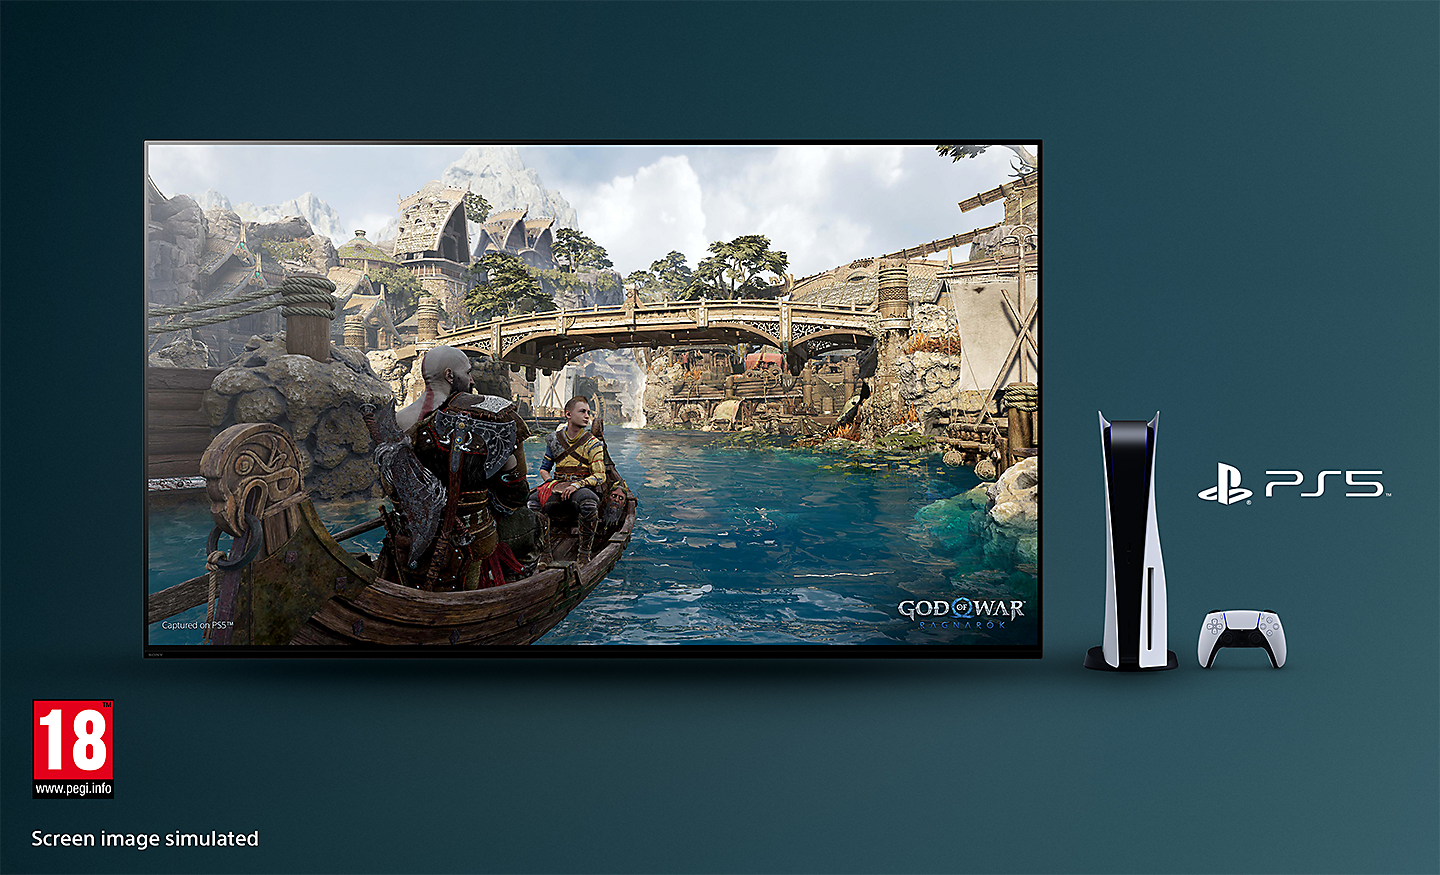 BRAVIA televizorius su ekrano kopija iš žaidimo „God of War“: Ragnarok“, kuriame matoma valtis upėje ir tiltas fone; televizoriaus dešinėje – žaidimų pultas PS5™, valdiklis ir PS5™ logotipas, apačioje dešinėje – PEGI 18 logotipas